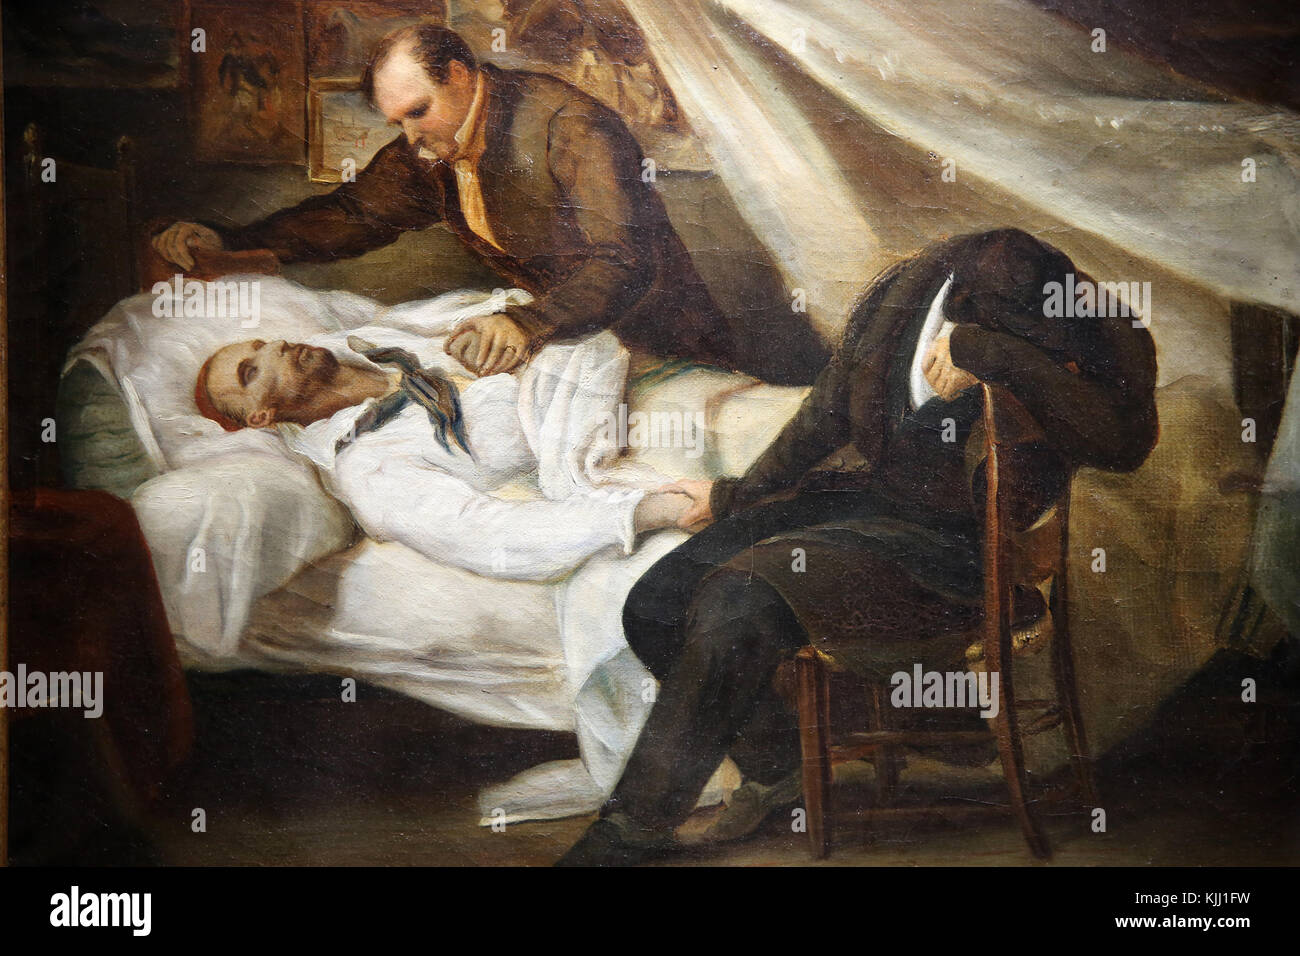 MusŽe de la Vie Romantique, Paris. Ary Scheffer, la mort de ThŽodore GŽricault, 1824, huile sur toile. France. Stock Photo